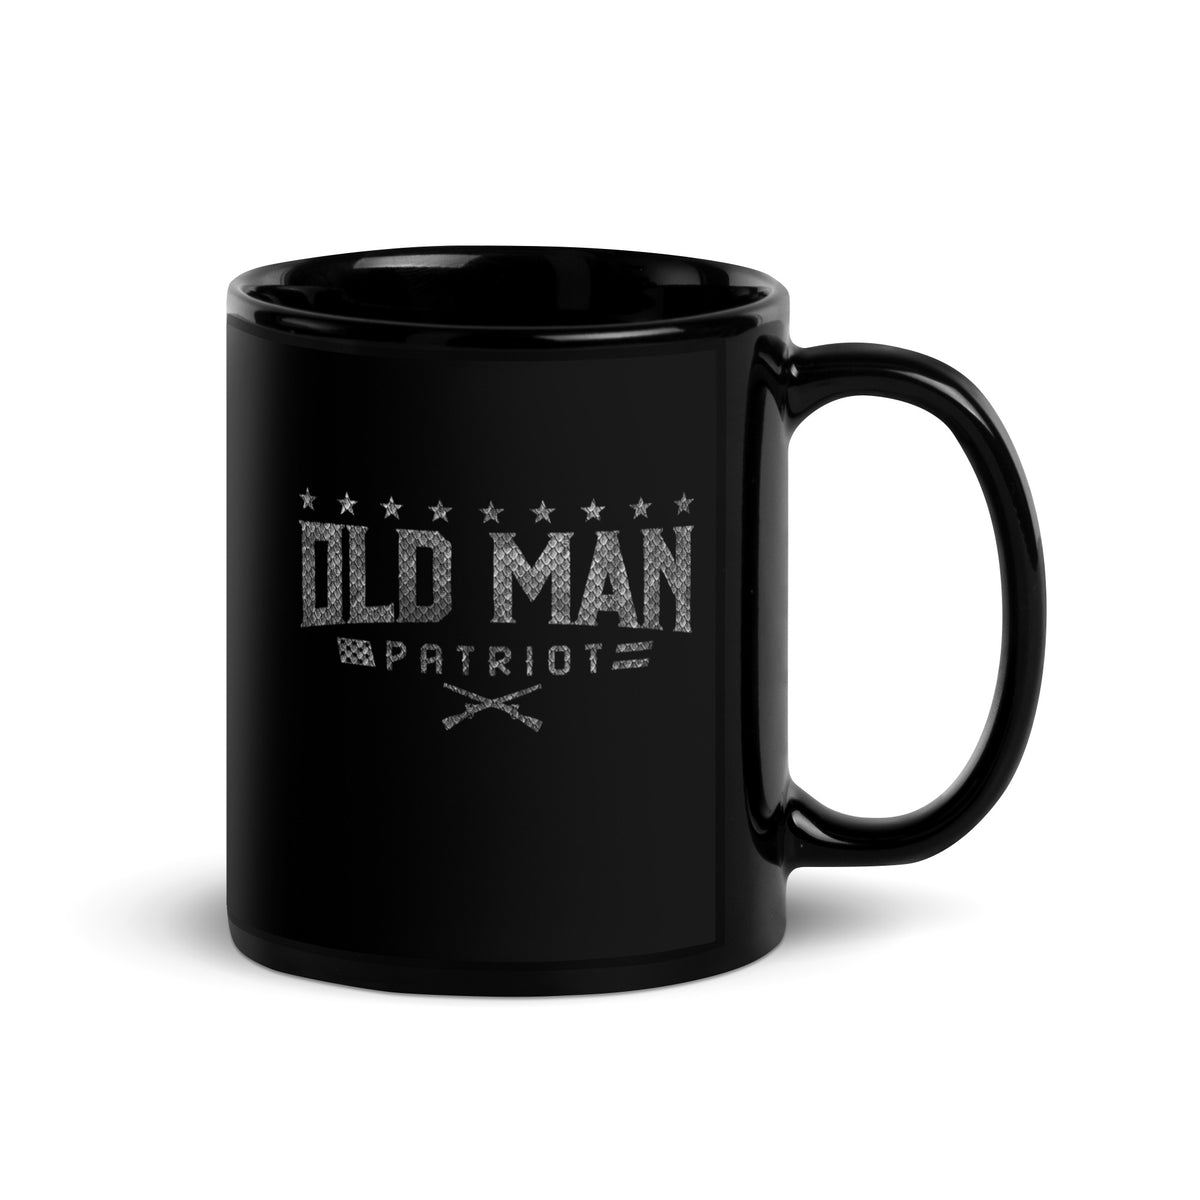 Old Man Carbon Mug